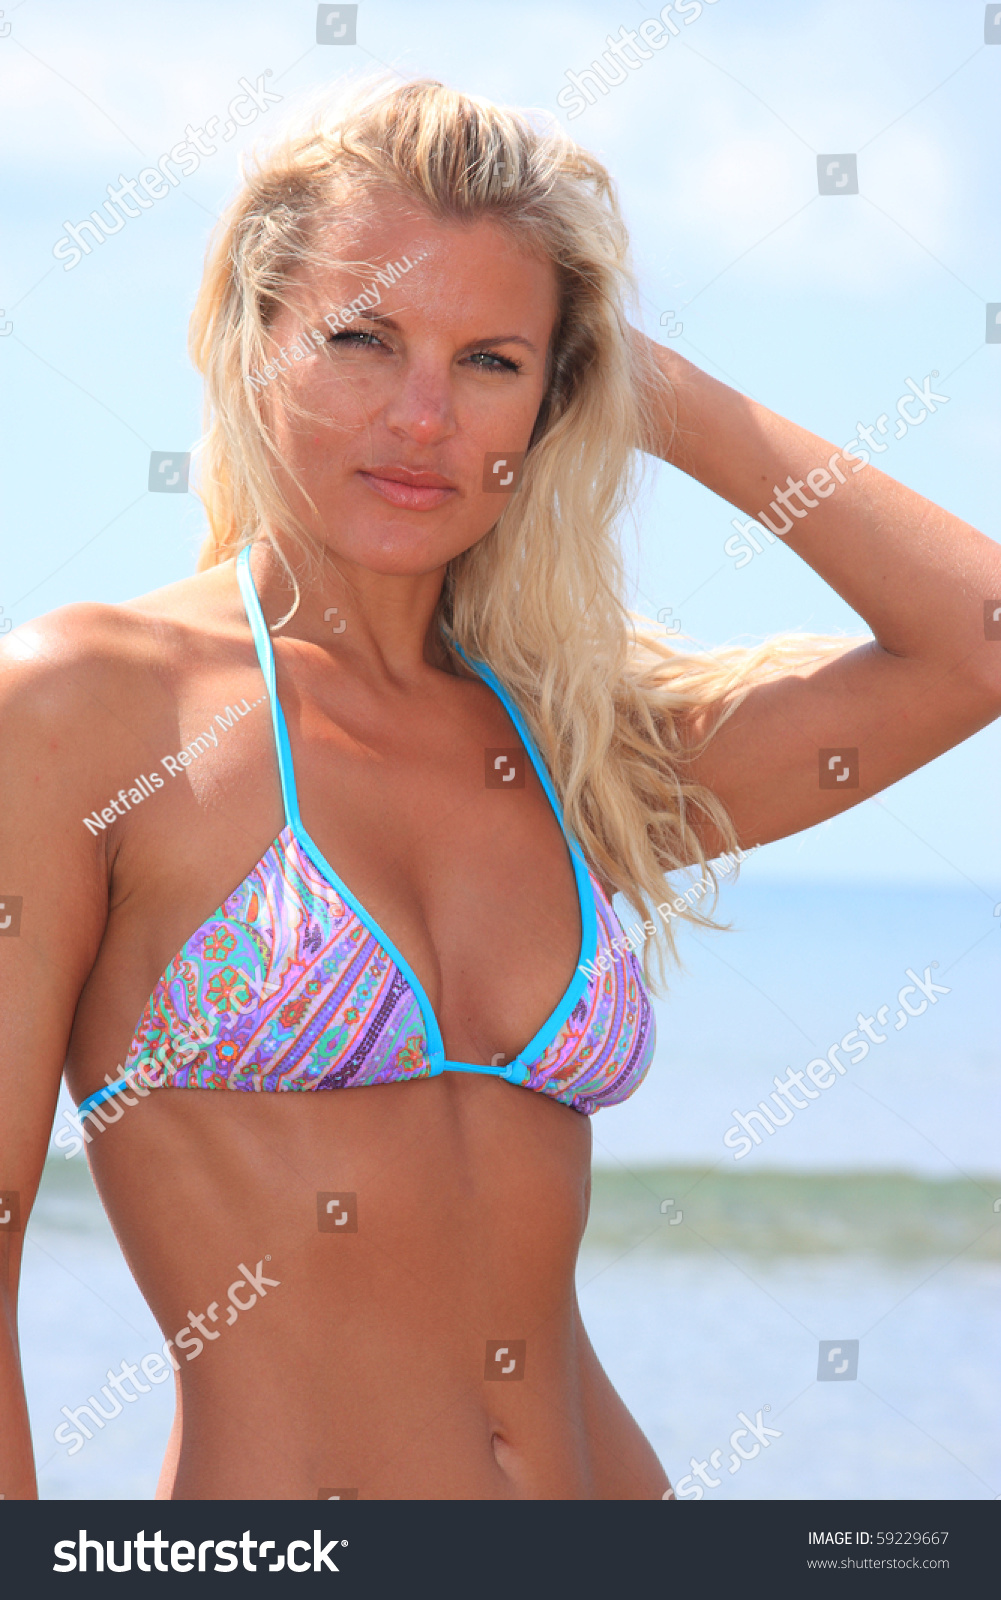 single russian girl in bikini photo